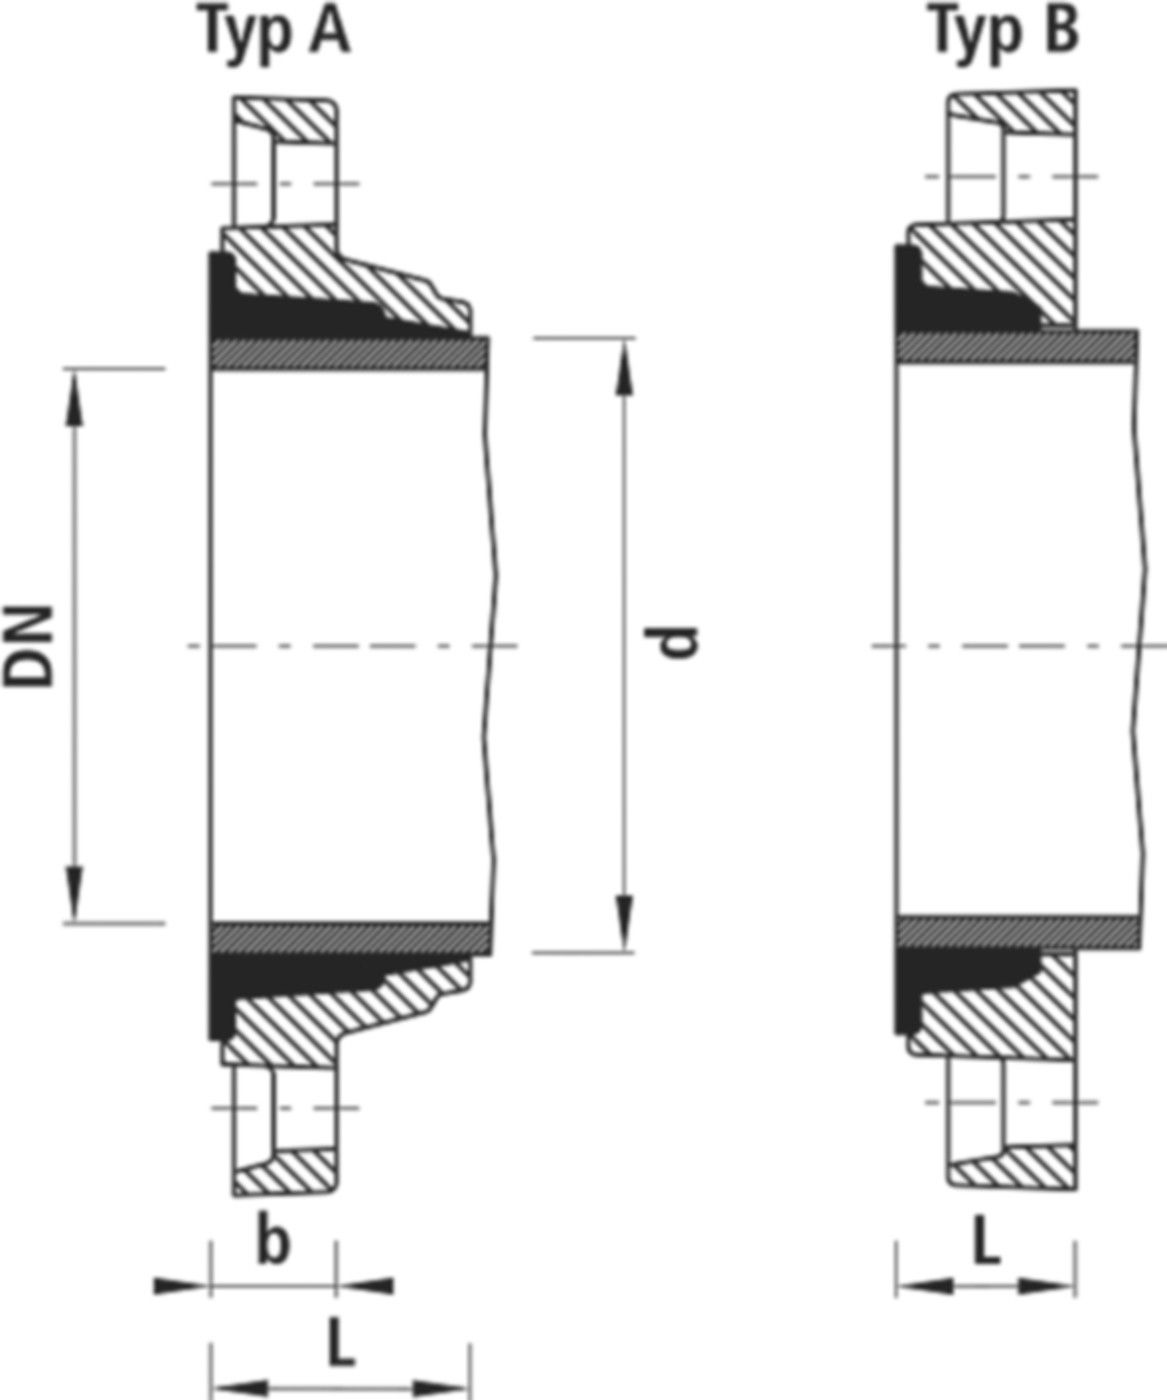 Zweikammer-Flansch für Stahlrohre 7130 PN 10/16 DN 50 / AD 60mm - Hawle Flanschformstücke